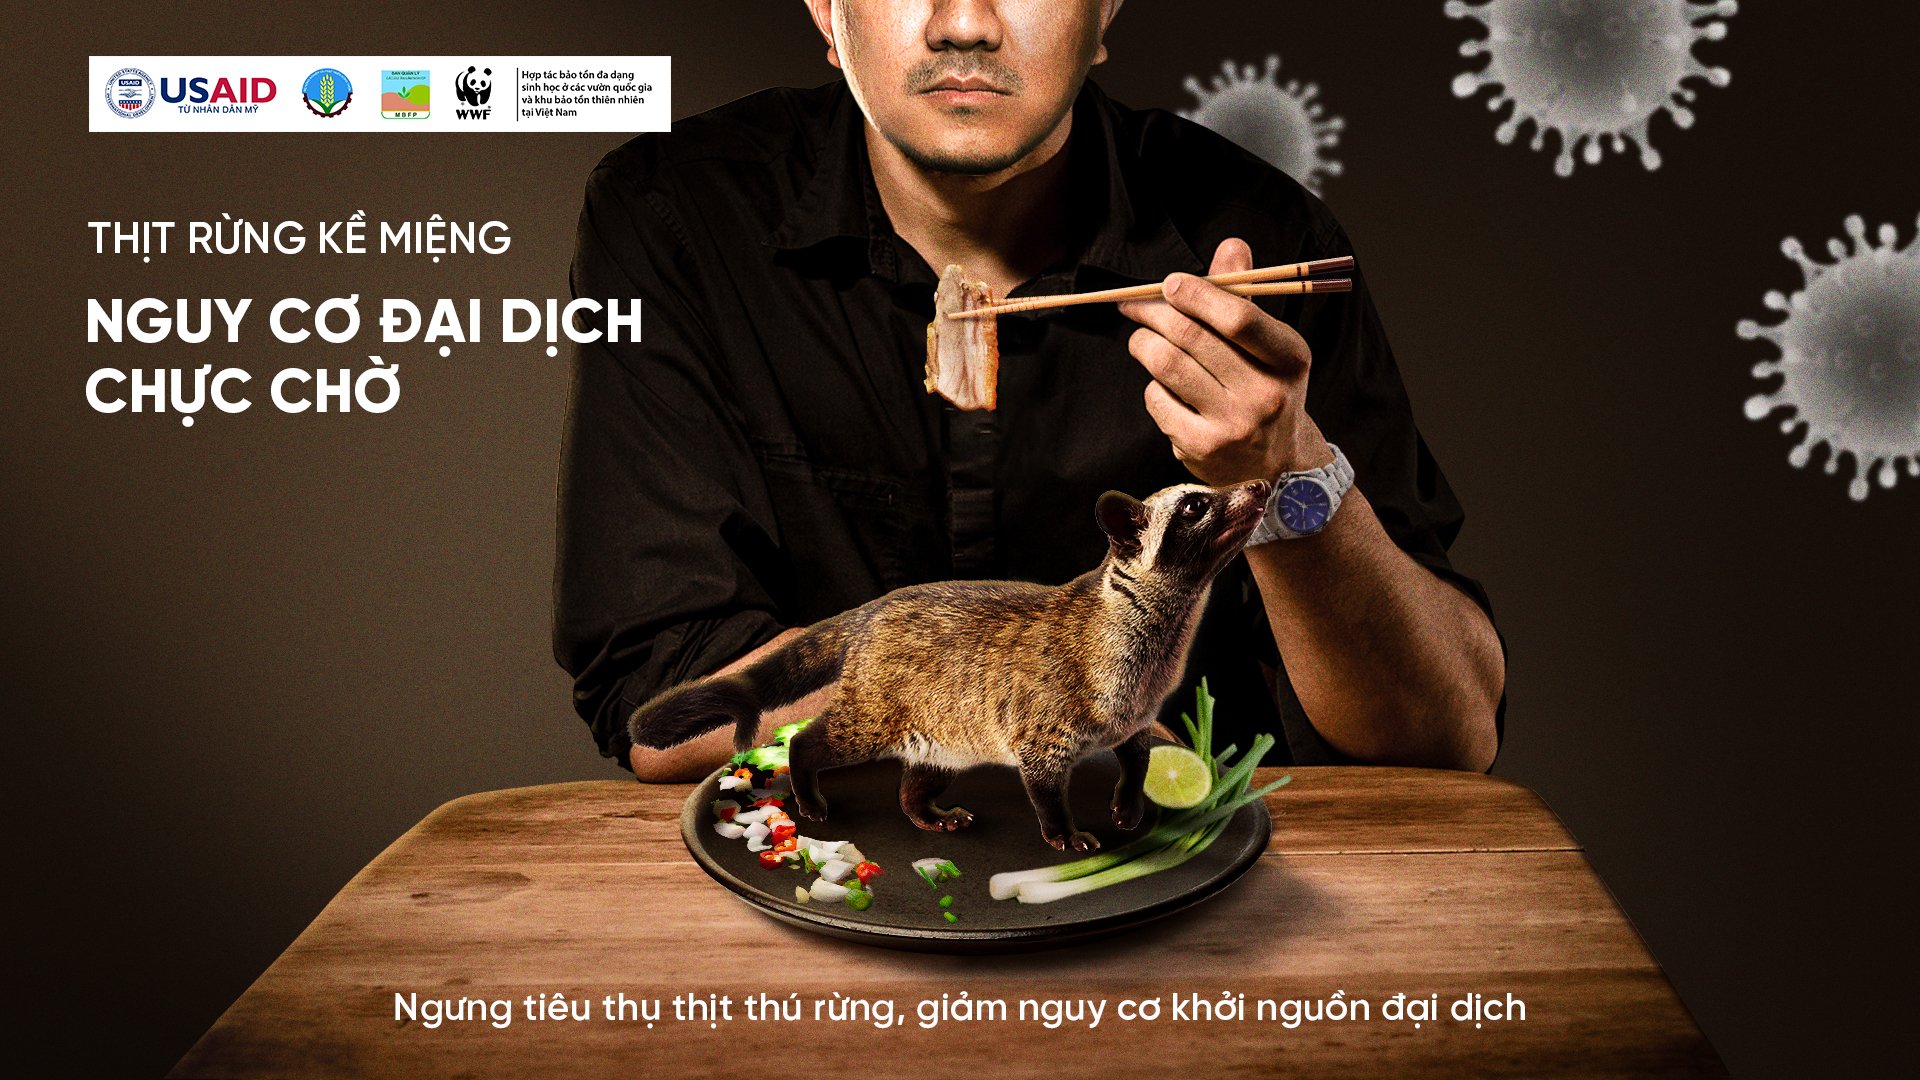 Hình ảnh truyền thông về chiến dịch 'Thịt rừng kề miệng, nguy cơ chực chờ'.